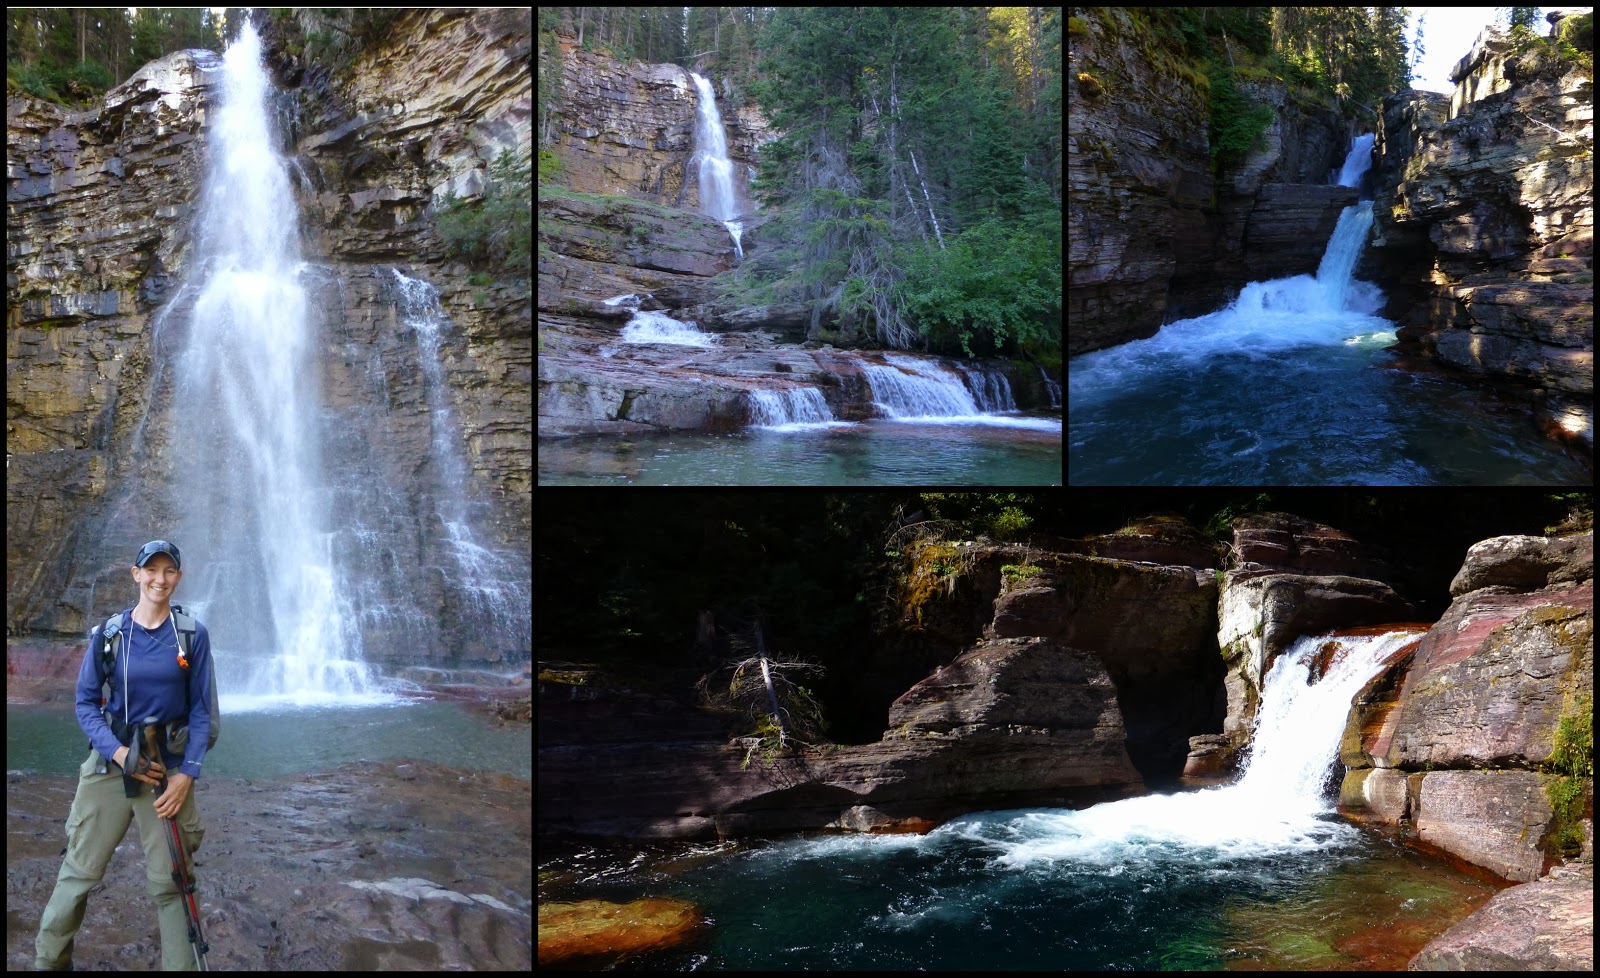 Day 132: Brush, Waterfalls, Views, & Community